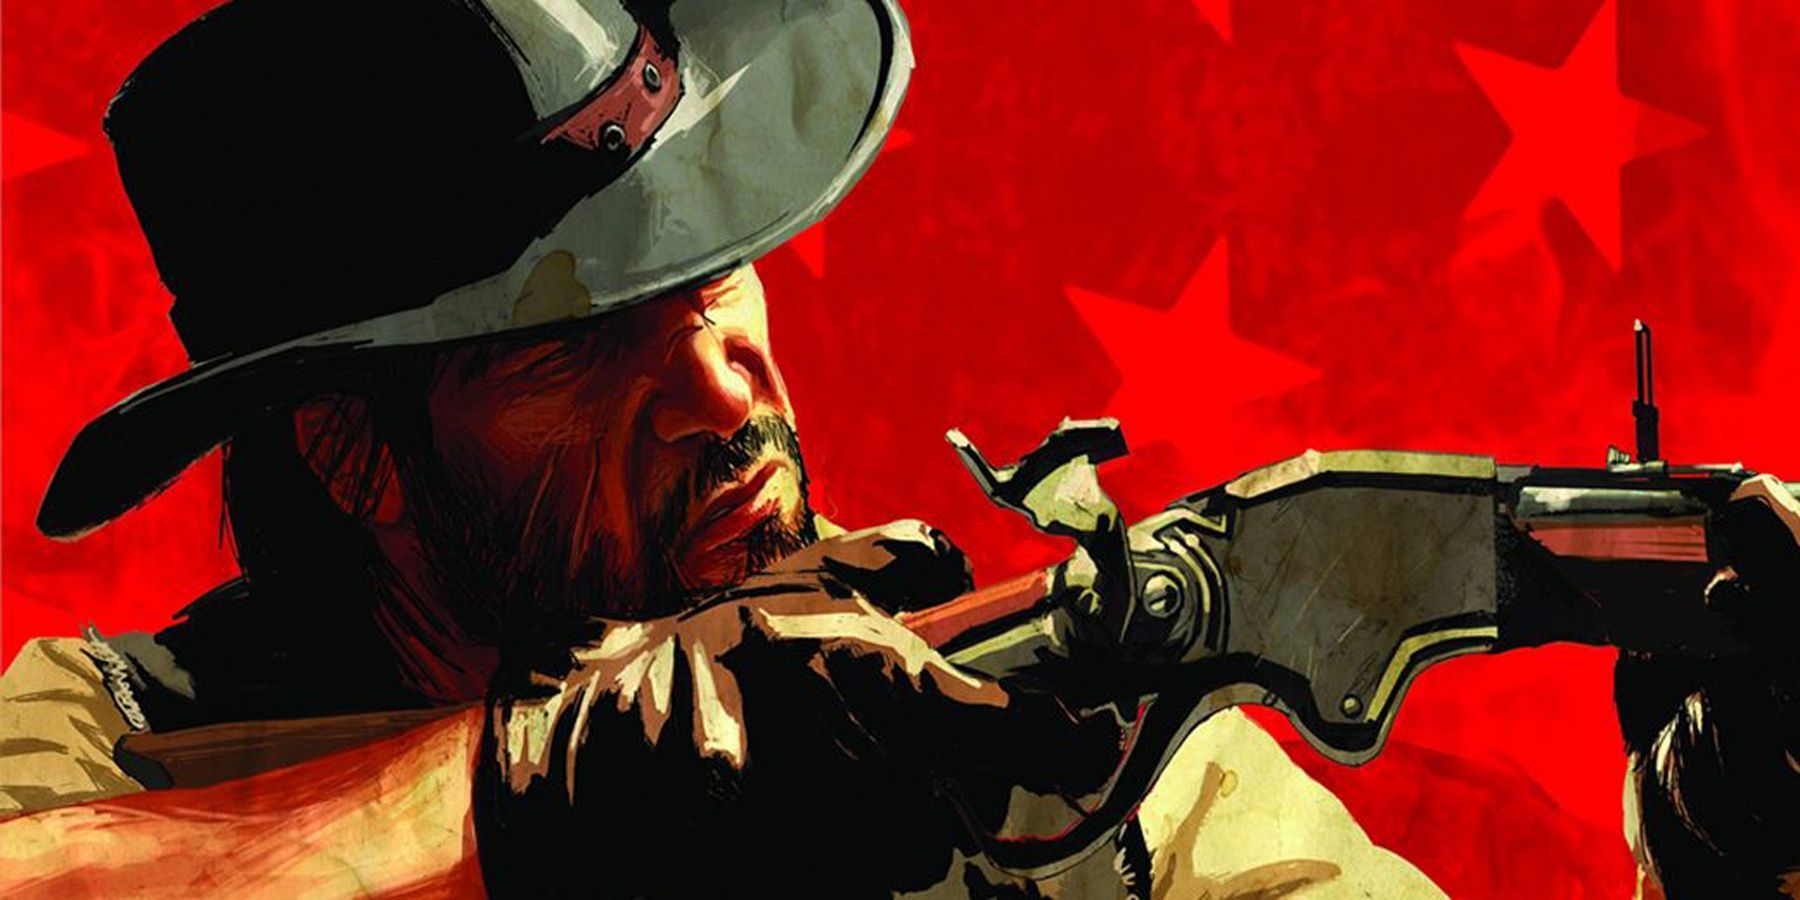 Red Dead Redemption - Metacritic